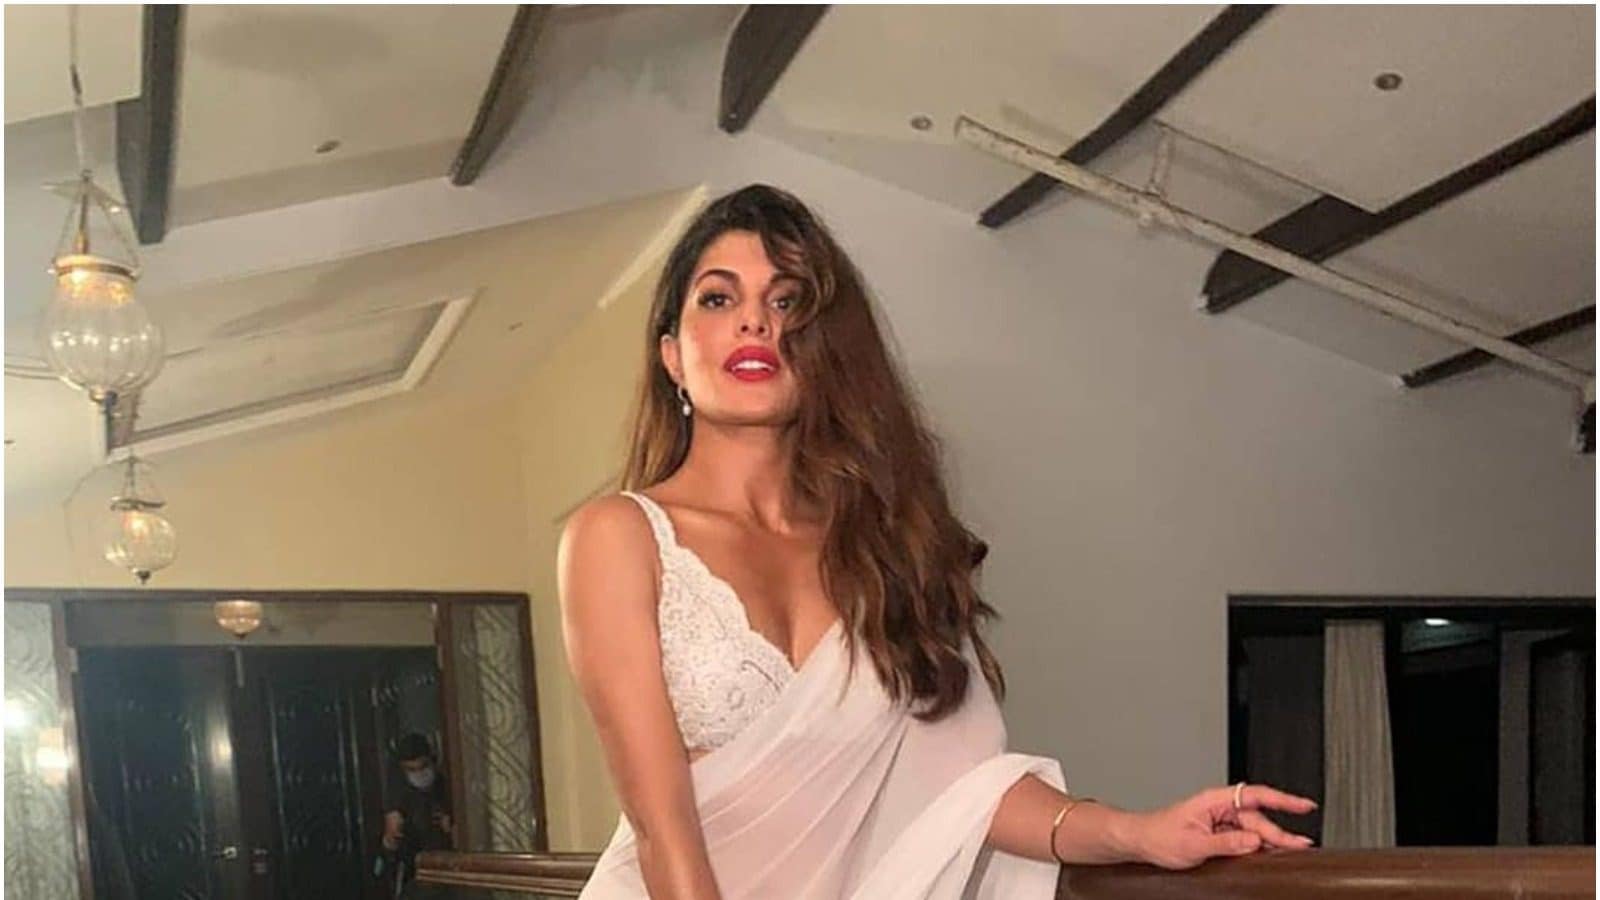 bollywood actress hot photos in saree